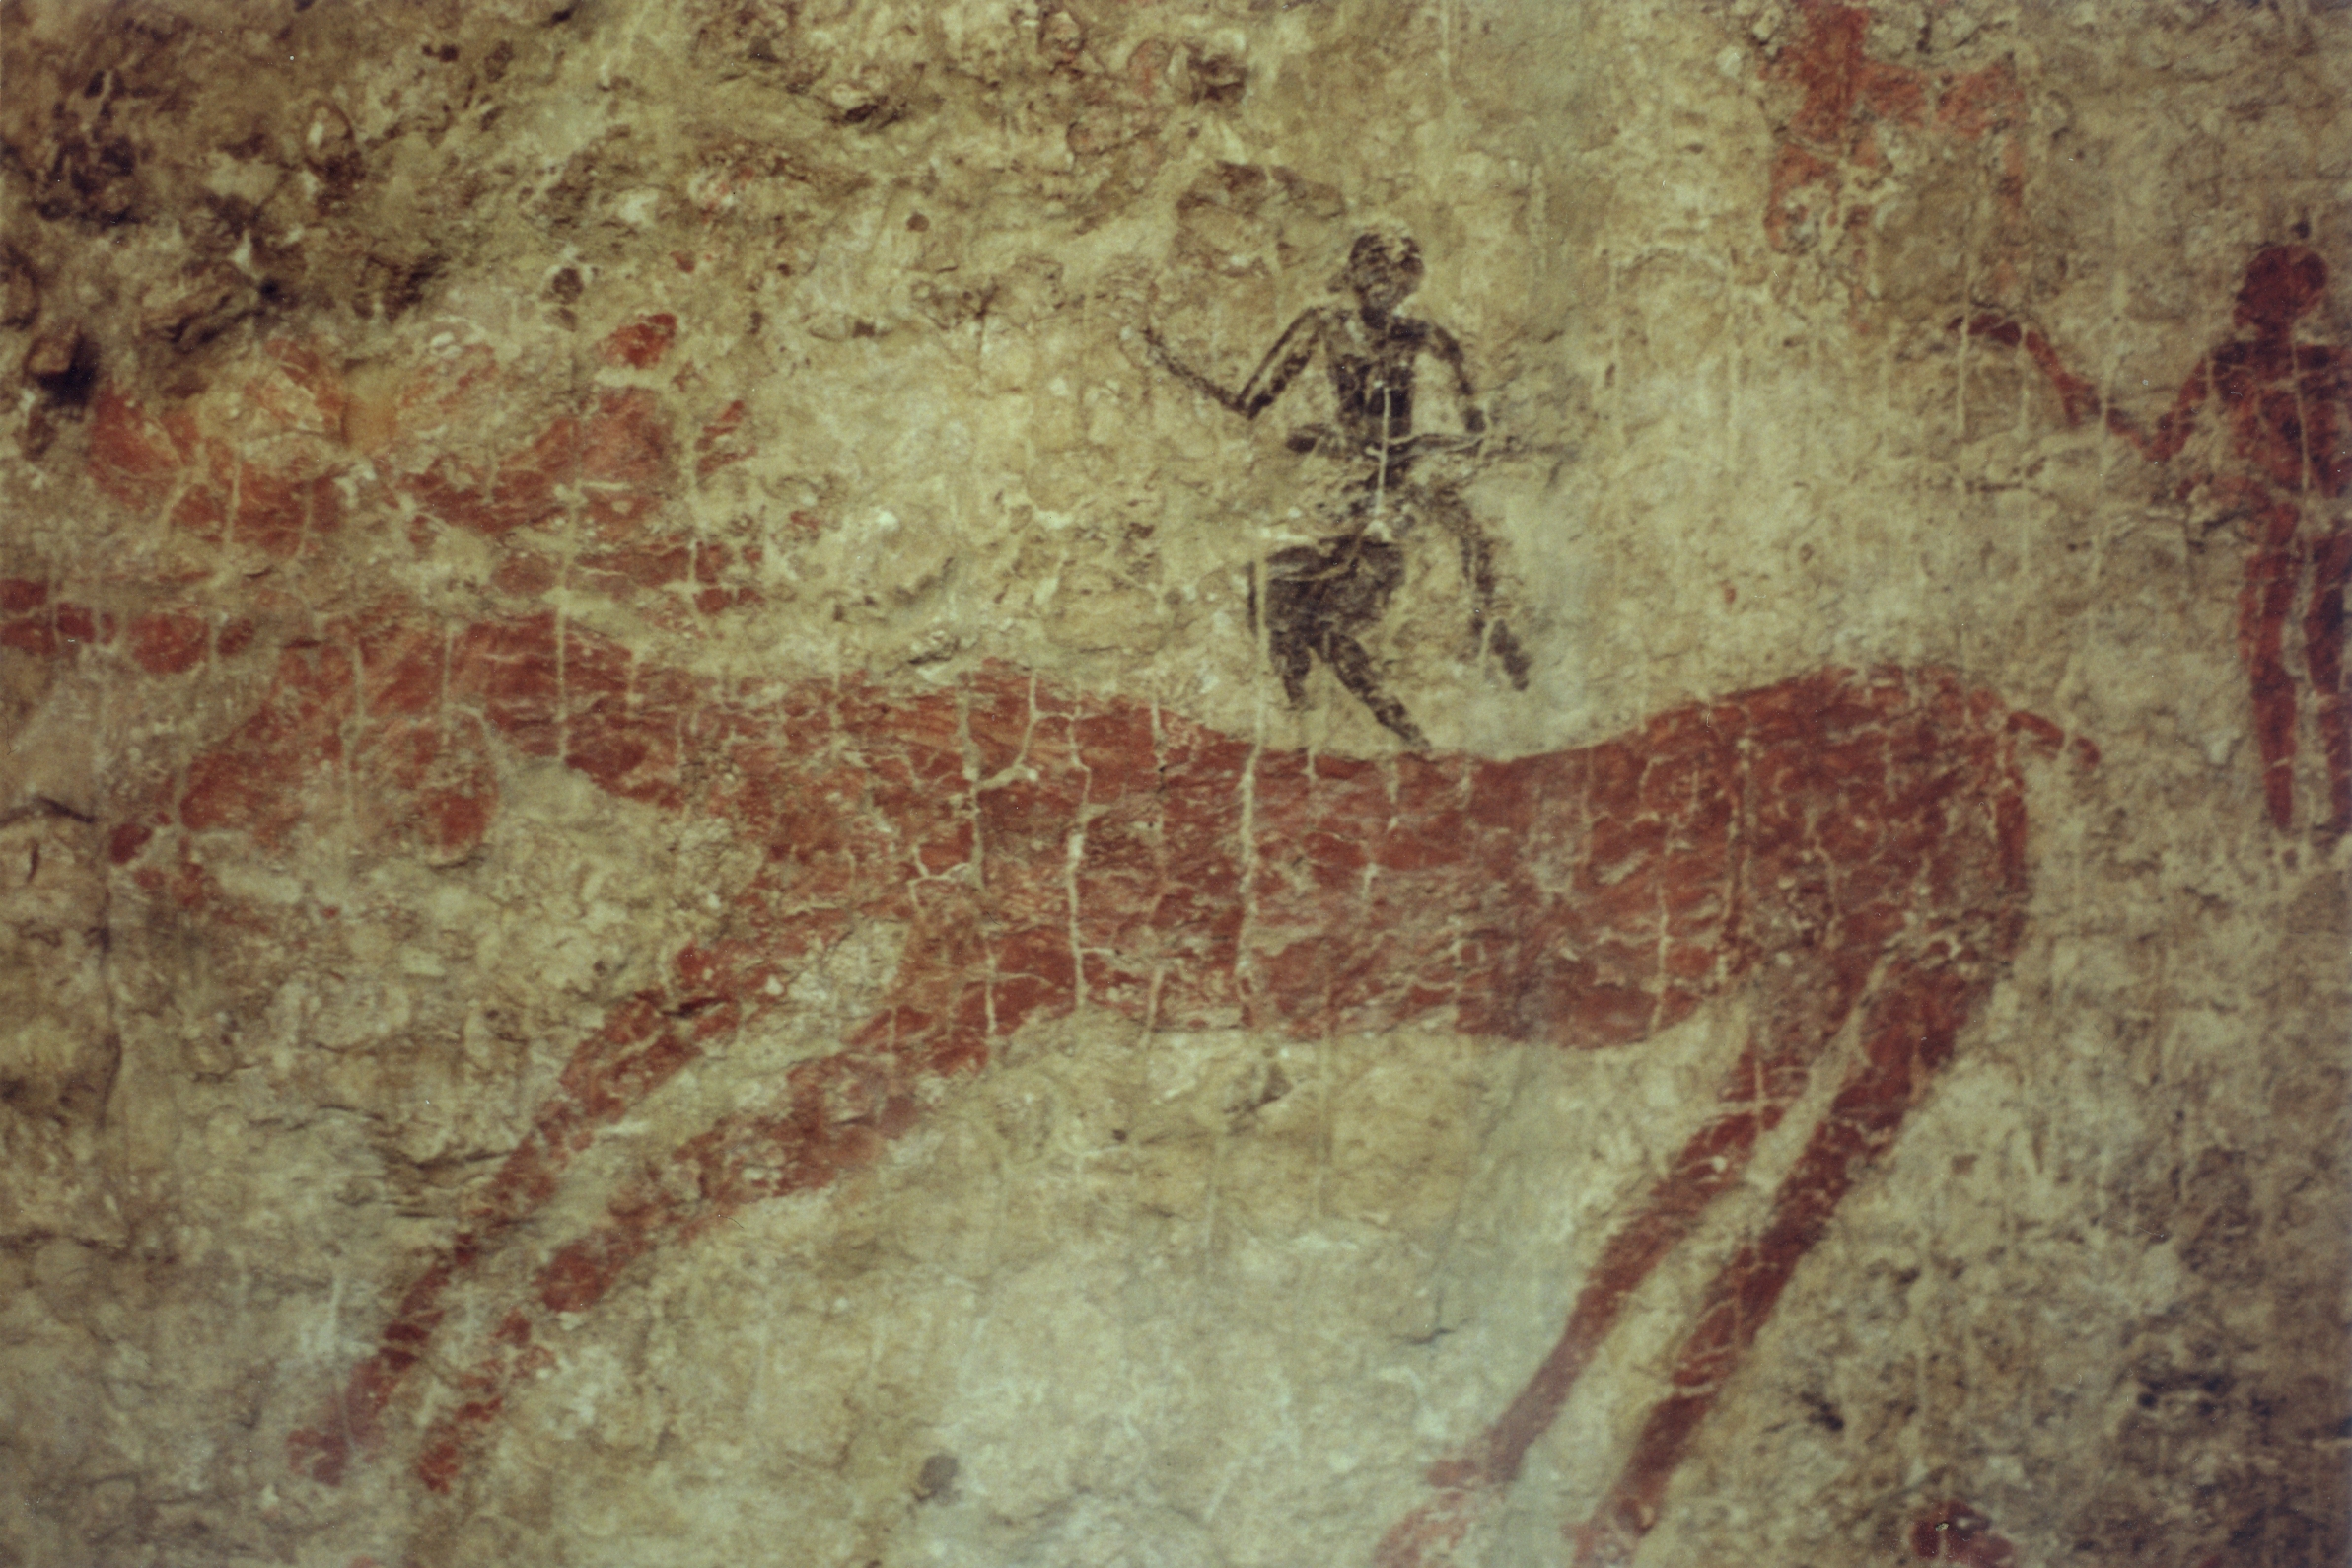 Peinture rupestre représentant une scène de chasse au sixième millénaire avant notre ère. Photo : Museum of Anatolian Civilizations, Ankara. © Zde, Wikimedia Commons, CC by-sa 4.0